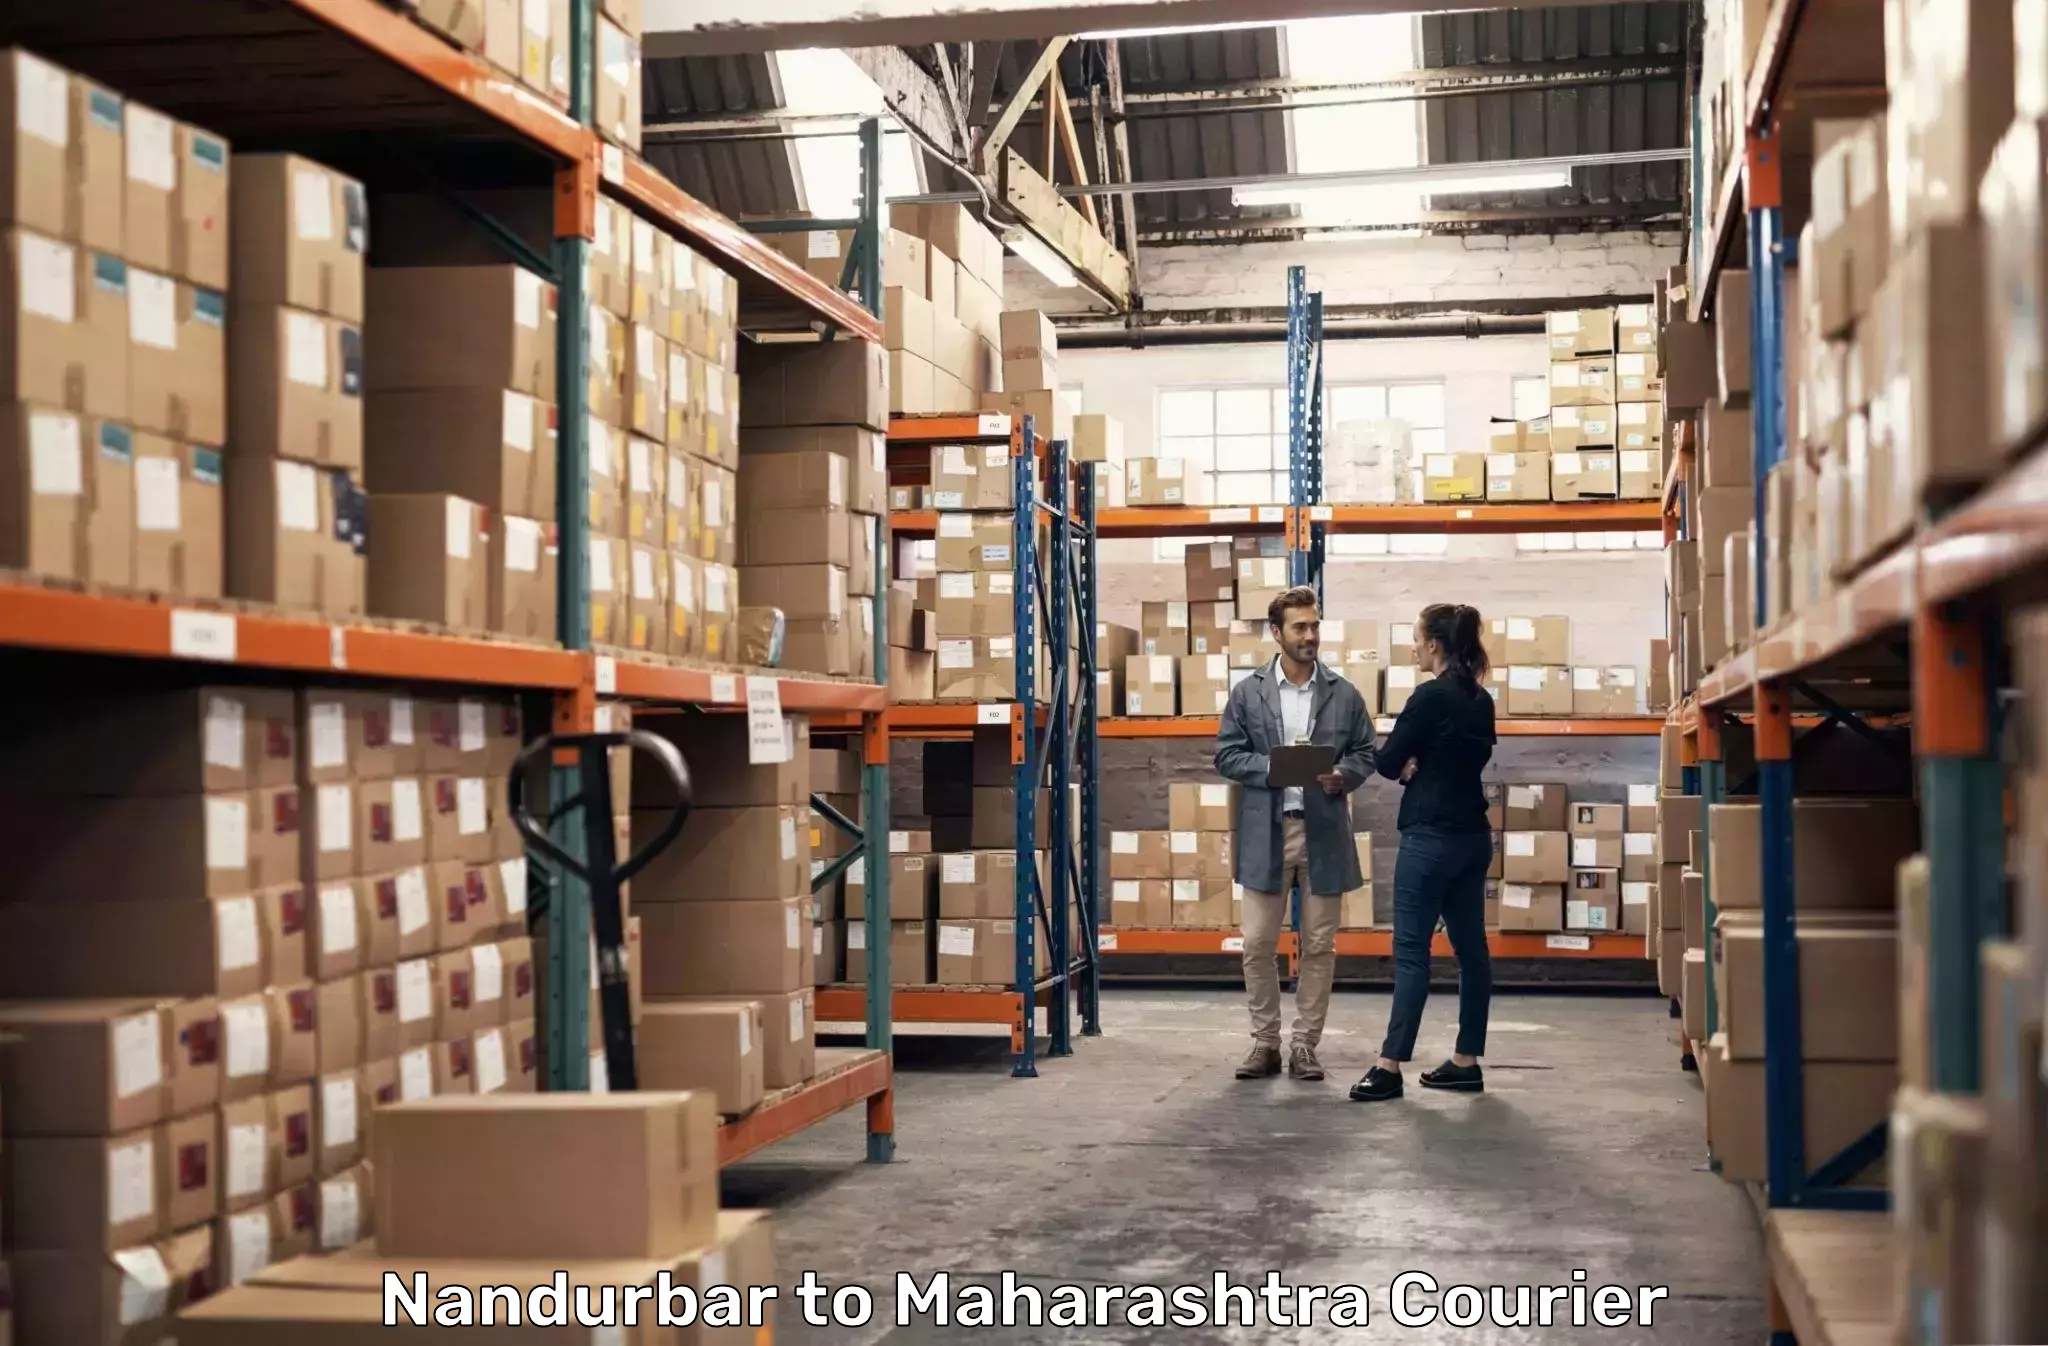 Advanced shipping network in Nandurbar to Ghugus